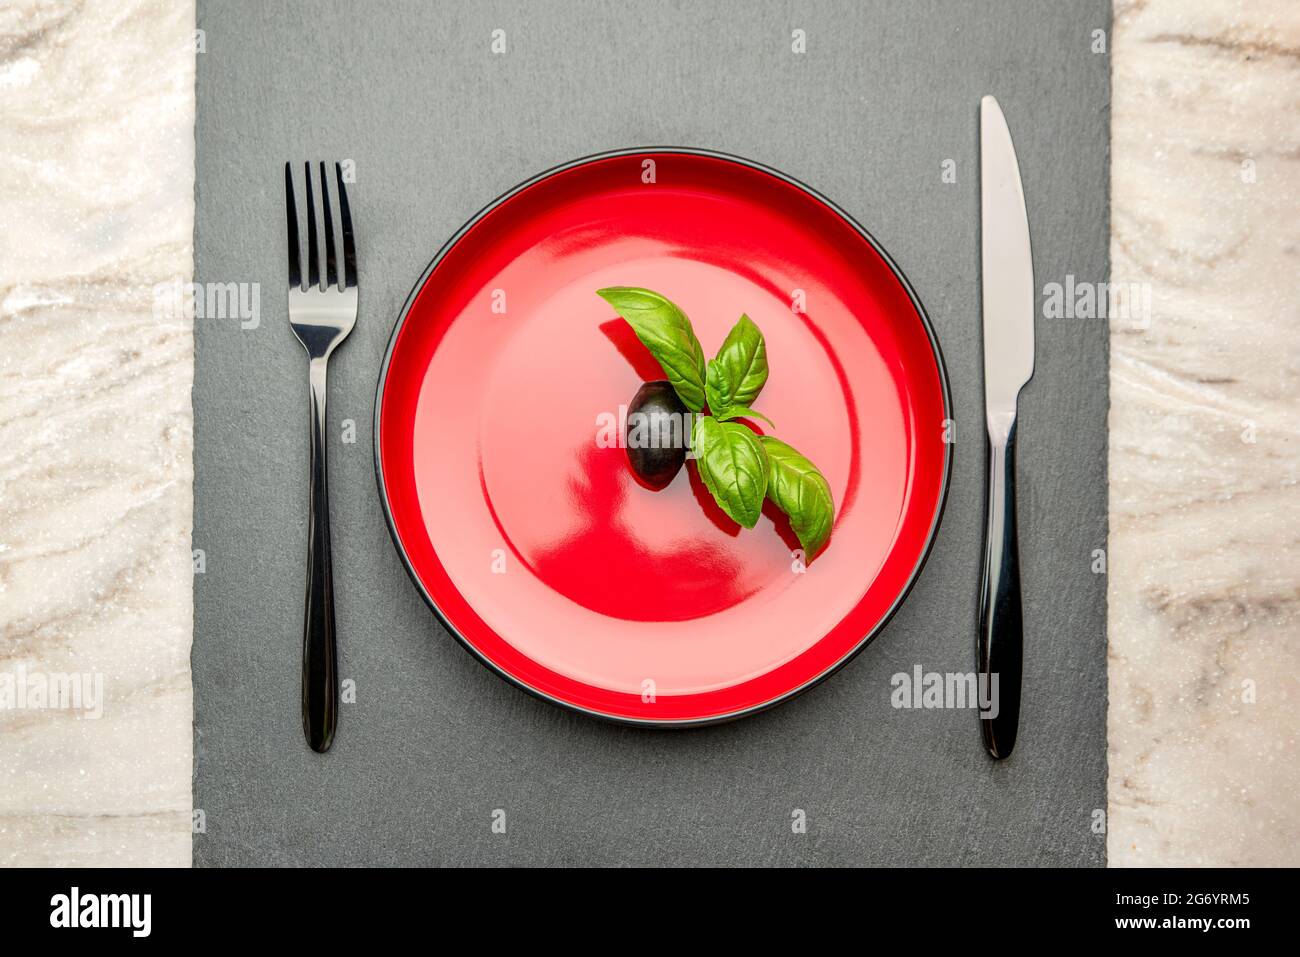 Régime alimentaire. Petite quantité d'aliments sur l'assiette. Une olive  est dans une assiette rouge, un couteau et une fourchette. Perte de poids  et concept de régime. Espace vide pour le texte Photo